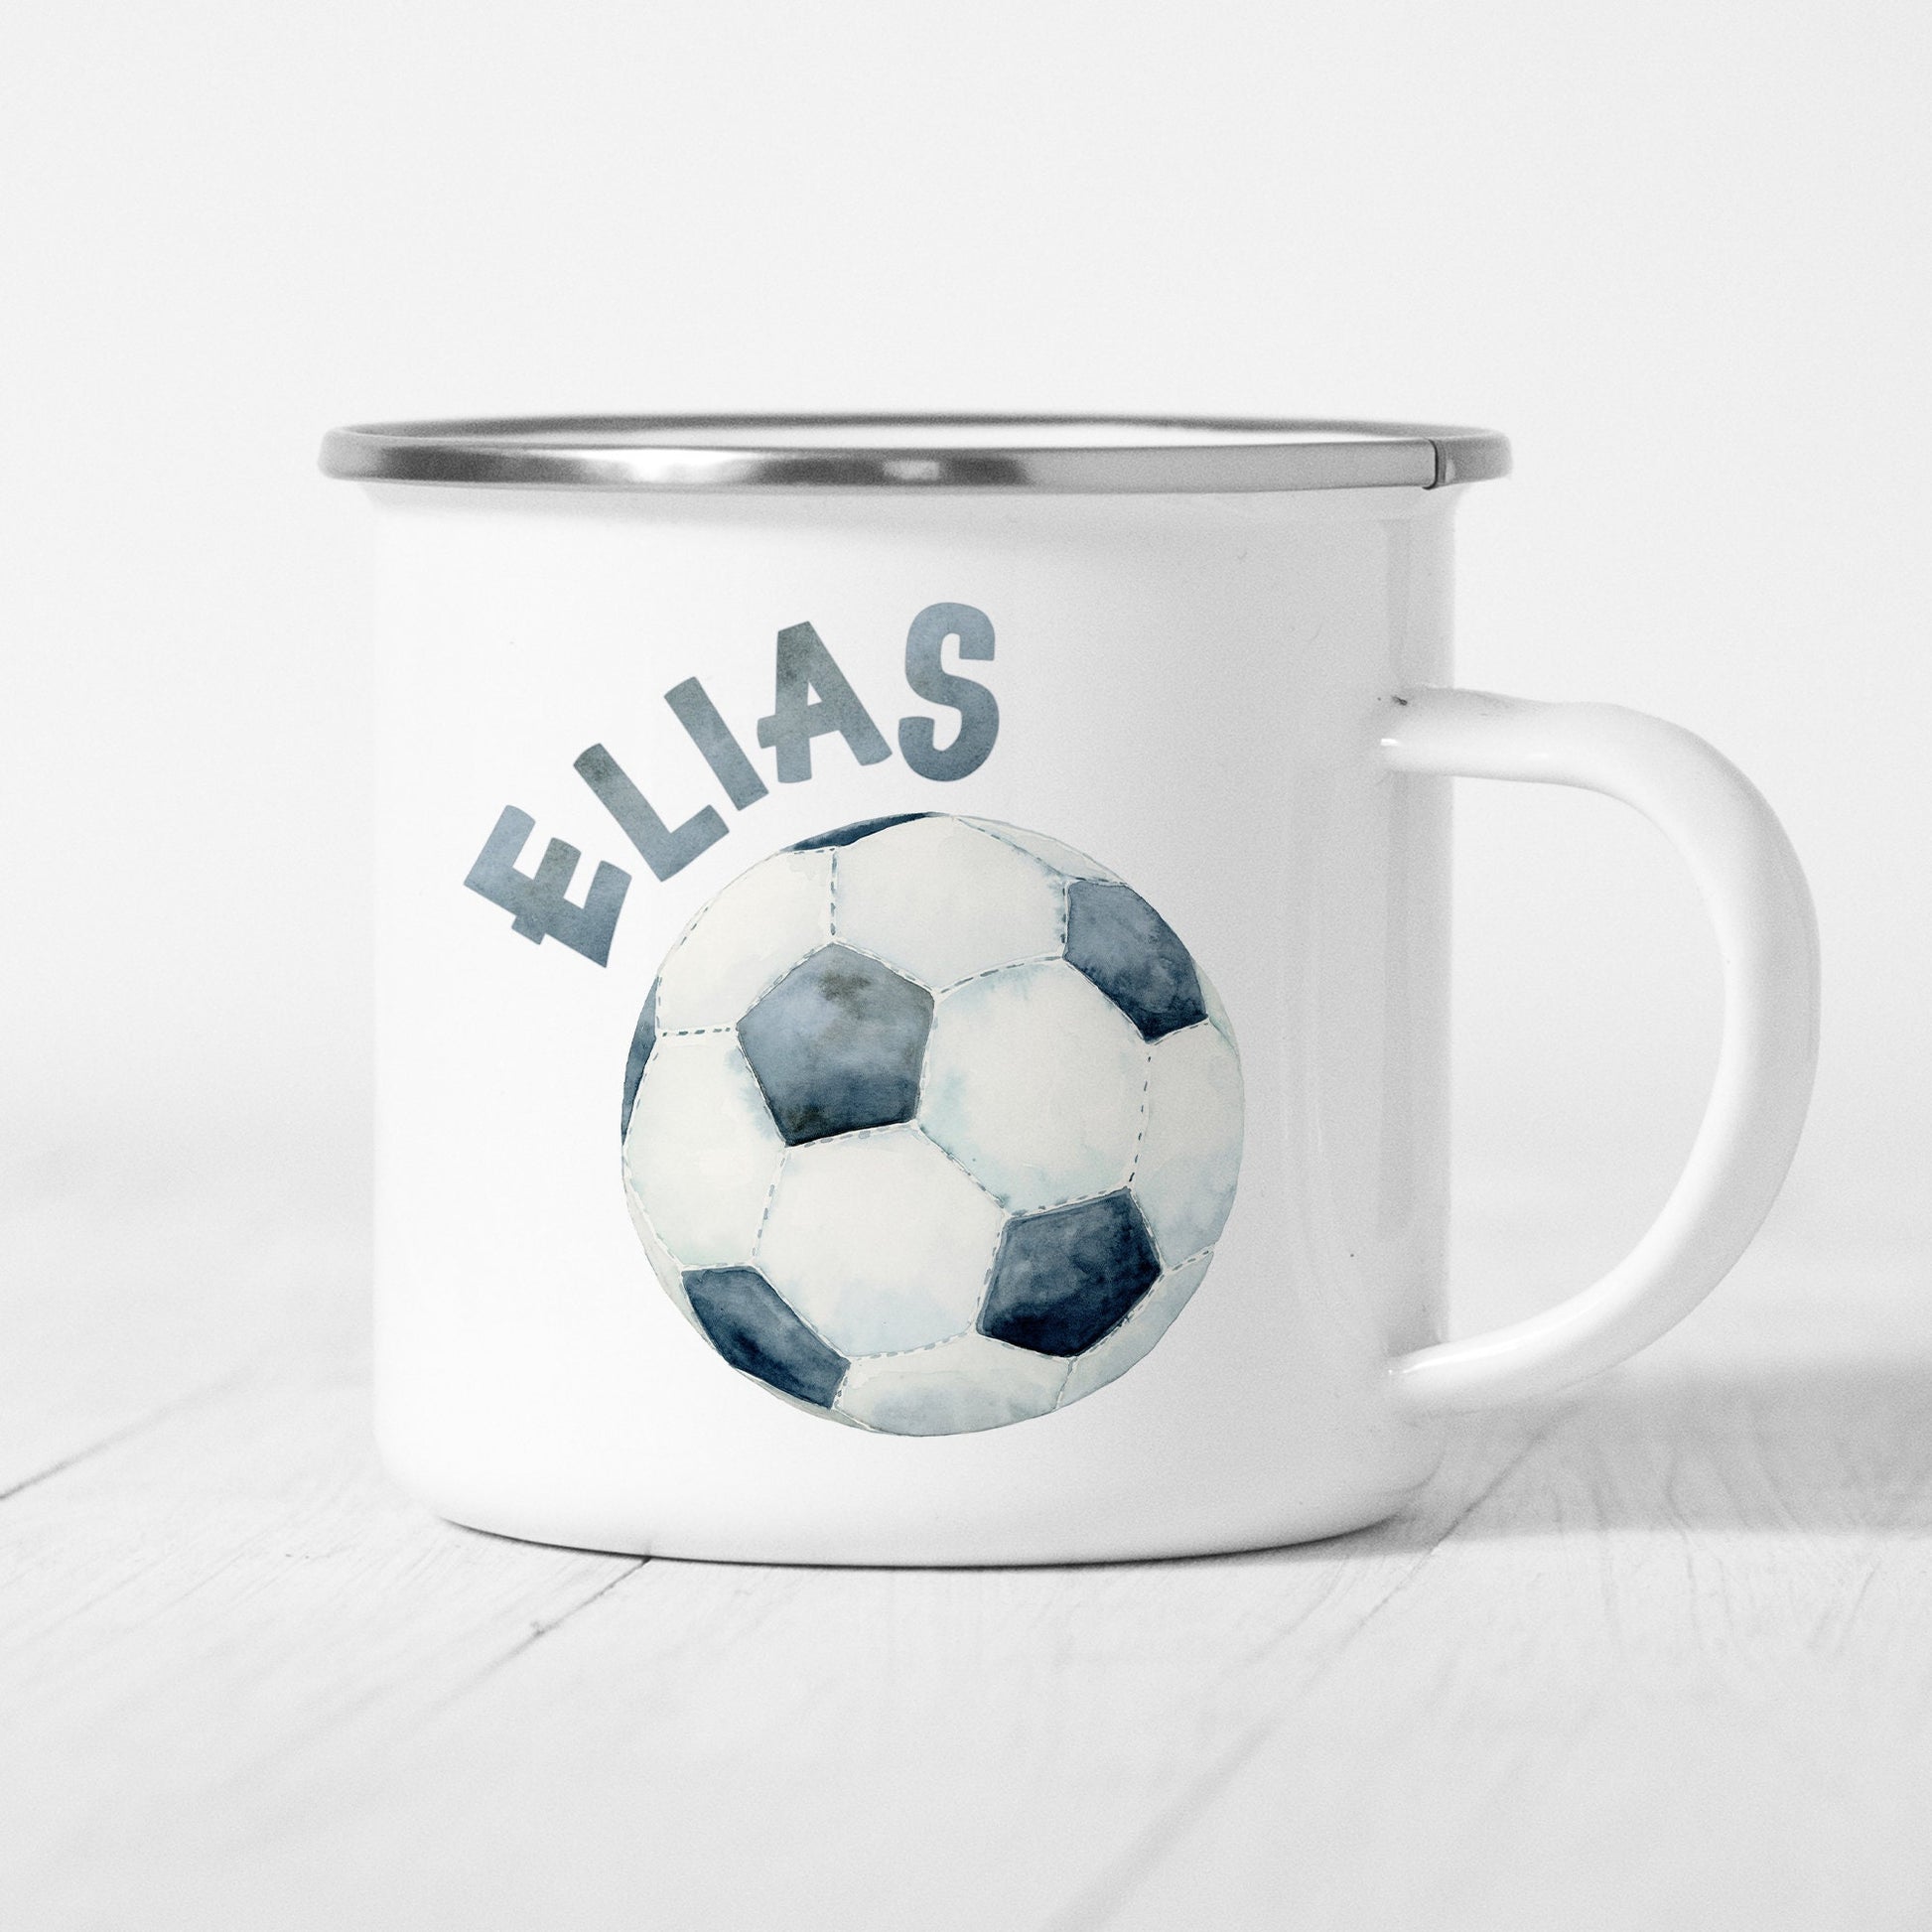 Fußball Tasse Emaille Kinder Personalisiert Name Kinderbecher Fussball Fußballspieler Namensgeschenk